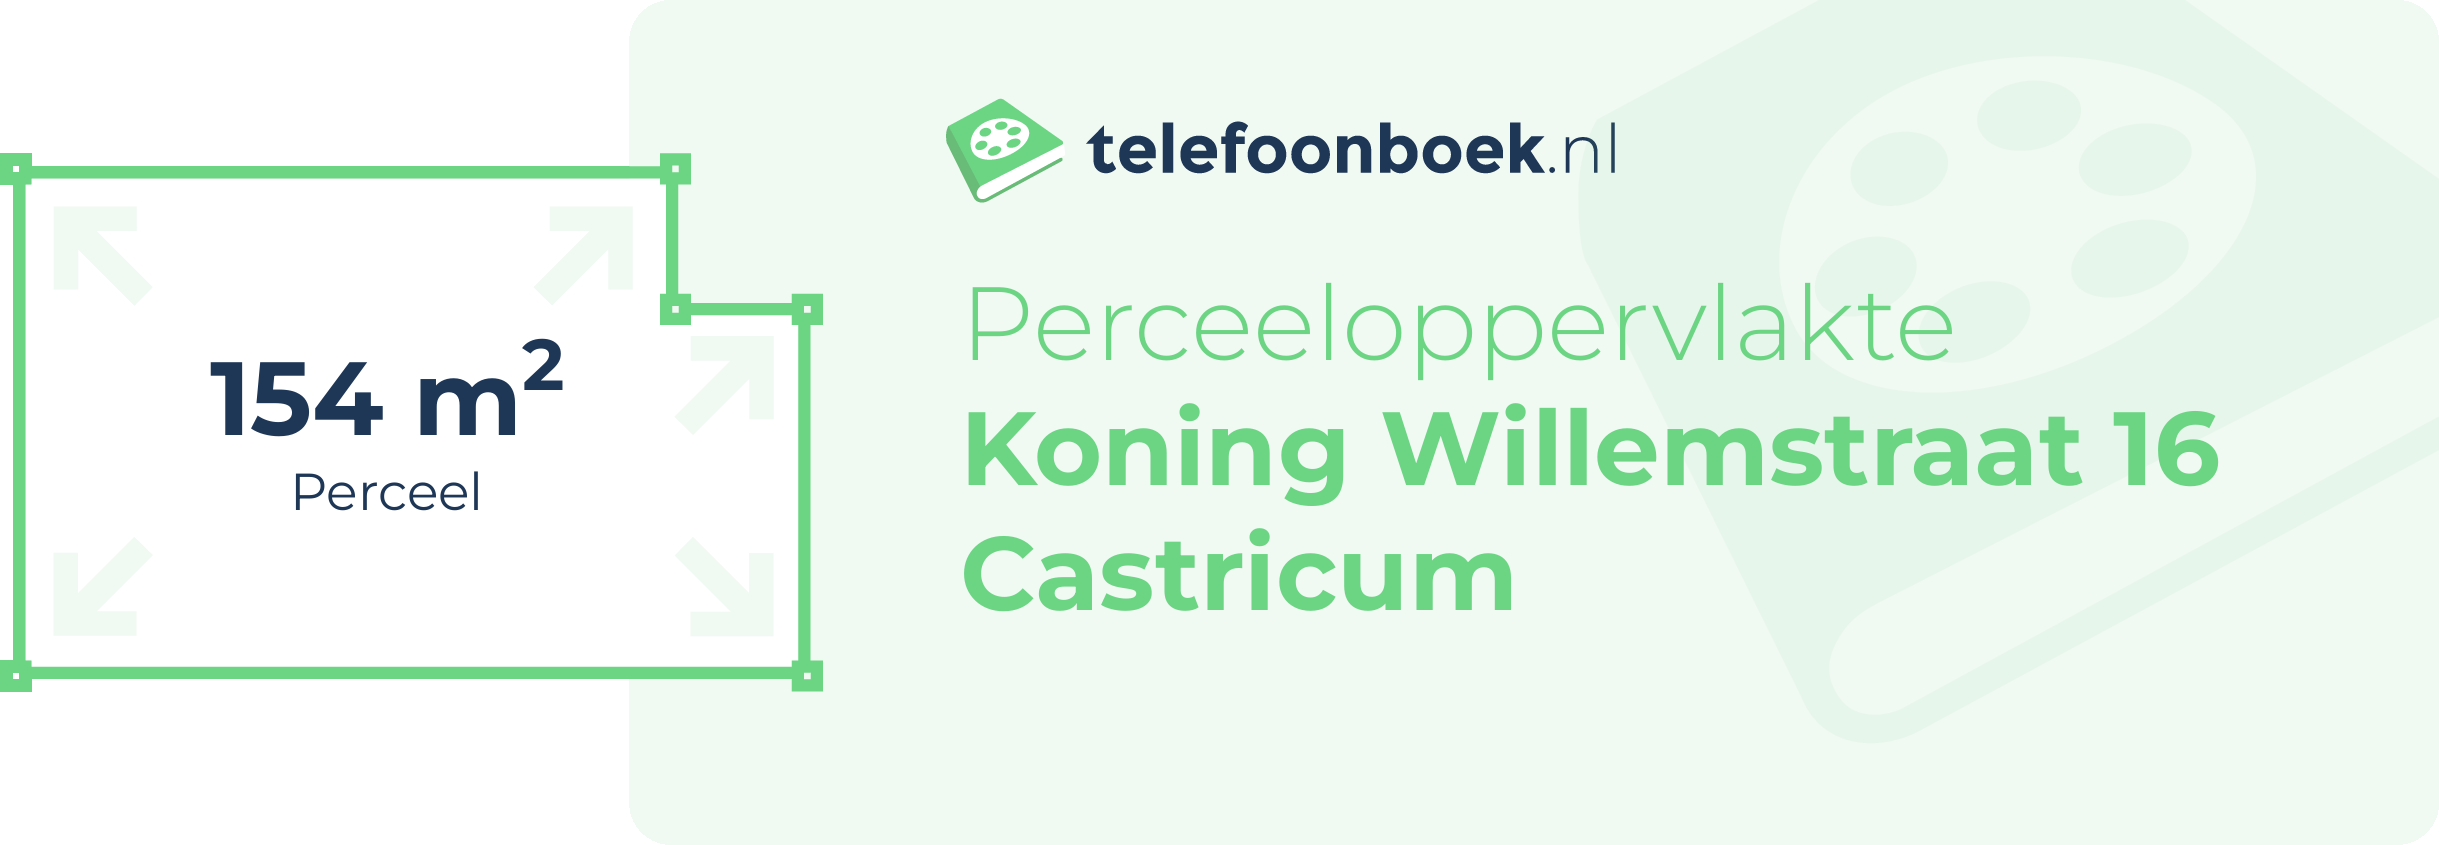 Perceeloppervlakte Koning Willemstraat 16 Castricum